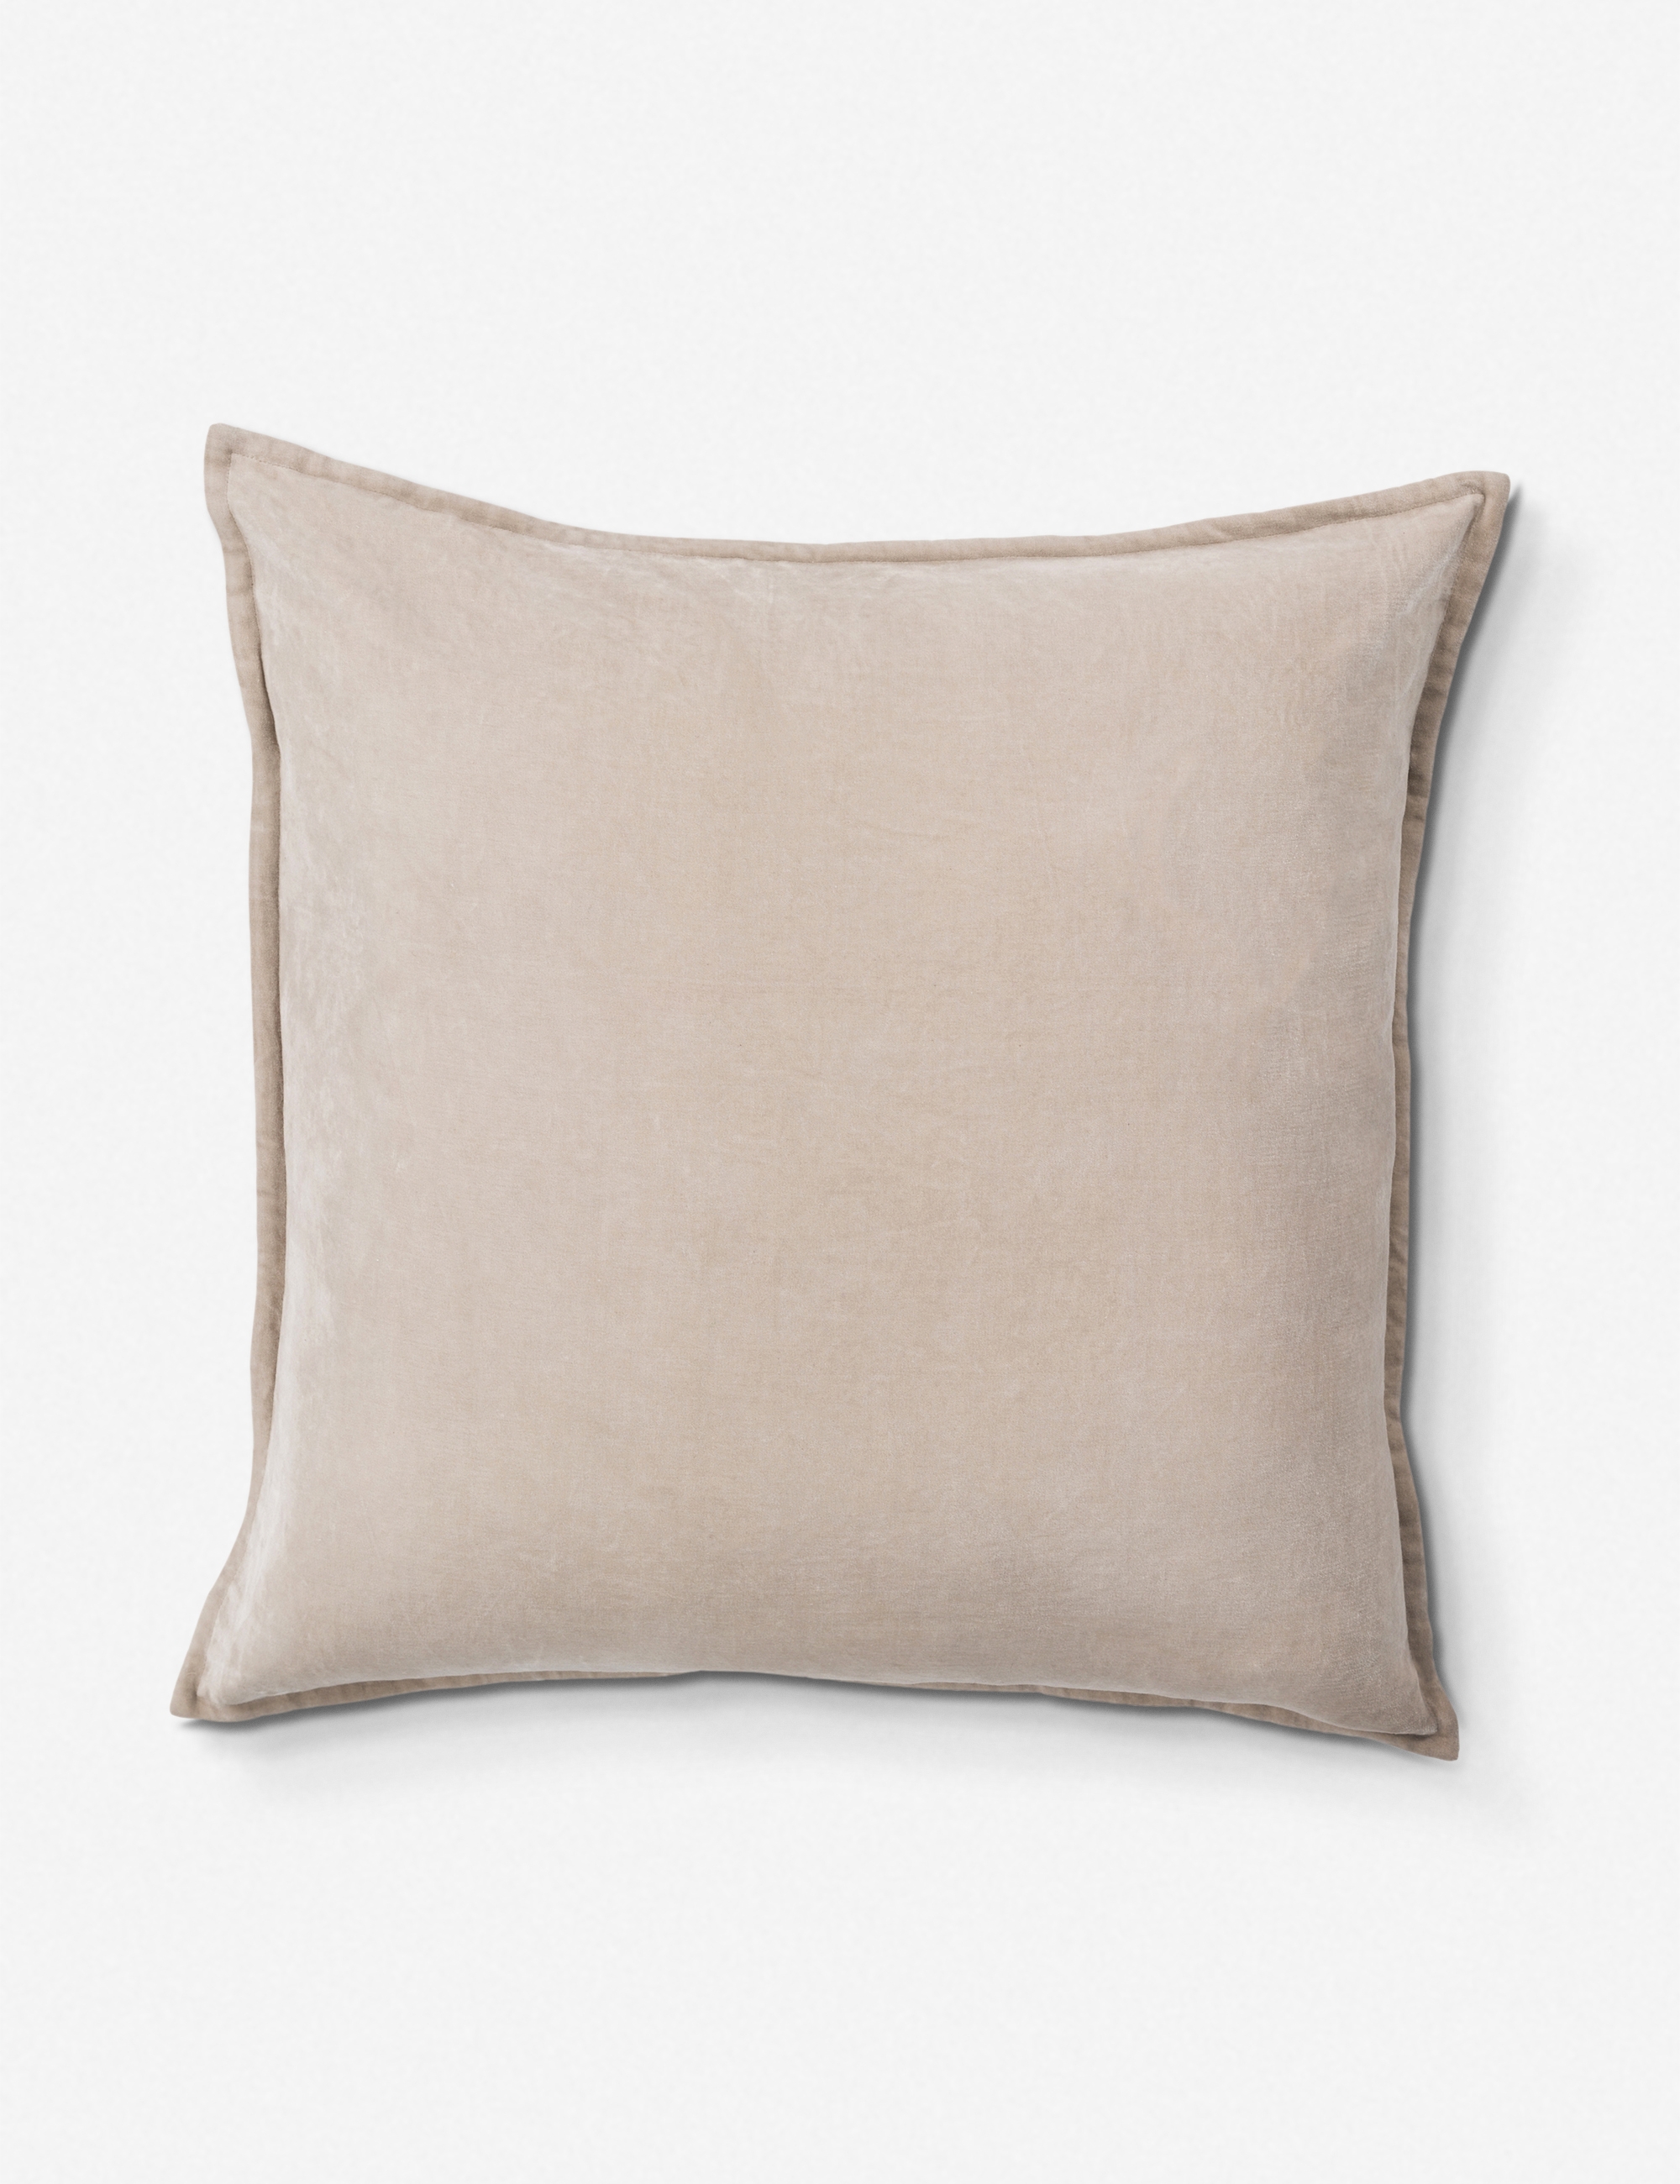 Maxen Velvet Pillow, Oyster 20" x 20" - Image 0